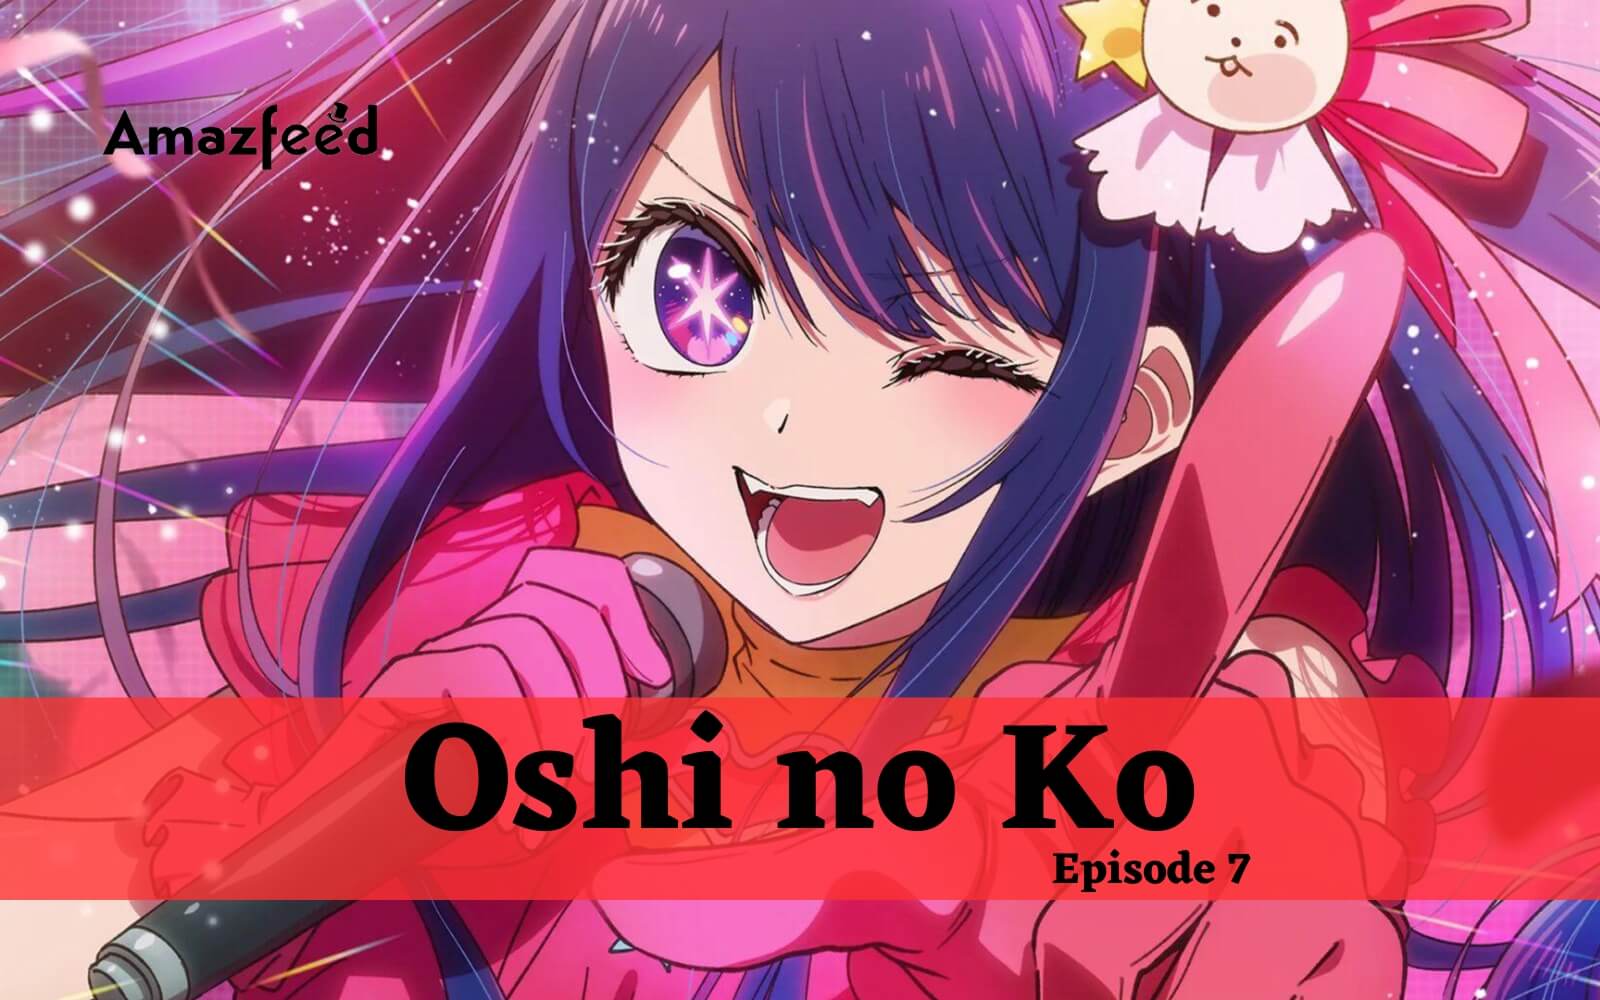 Oshi no Ko: episódio 7 já estreou, veja os detalhes - MeUGamer